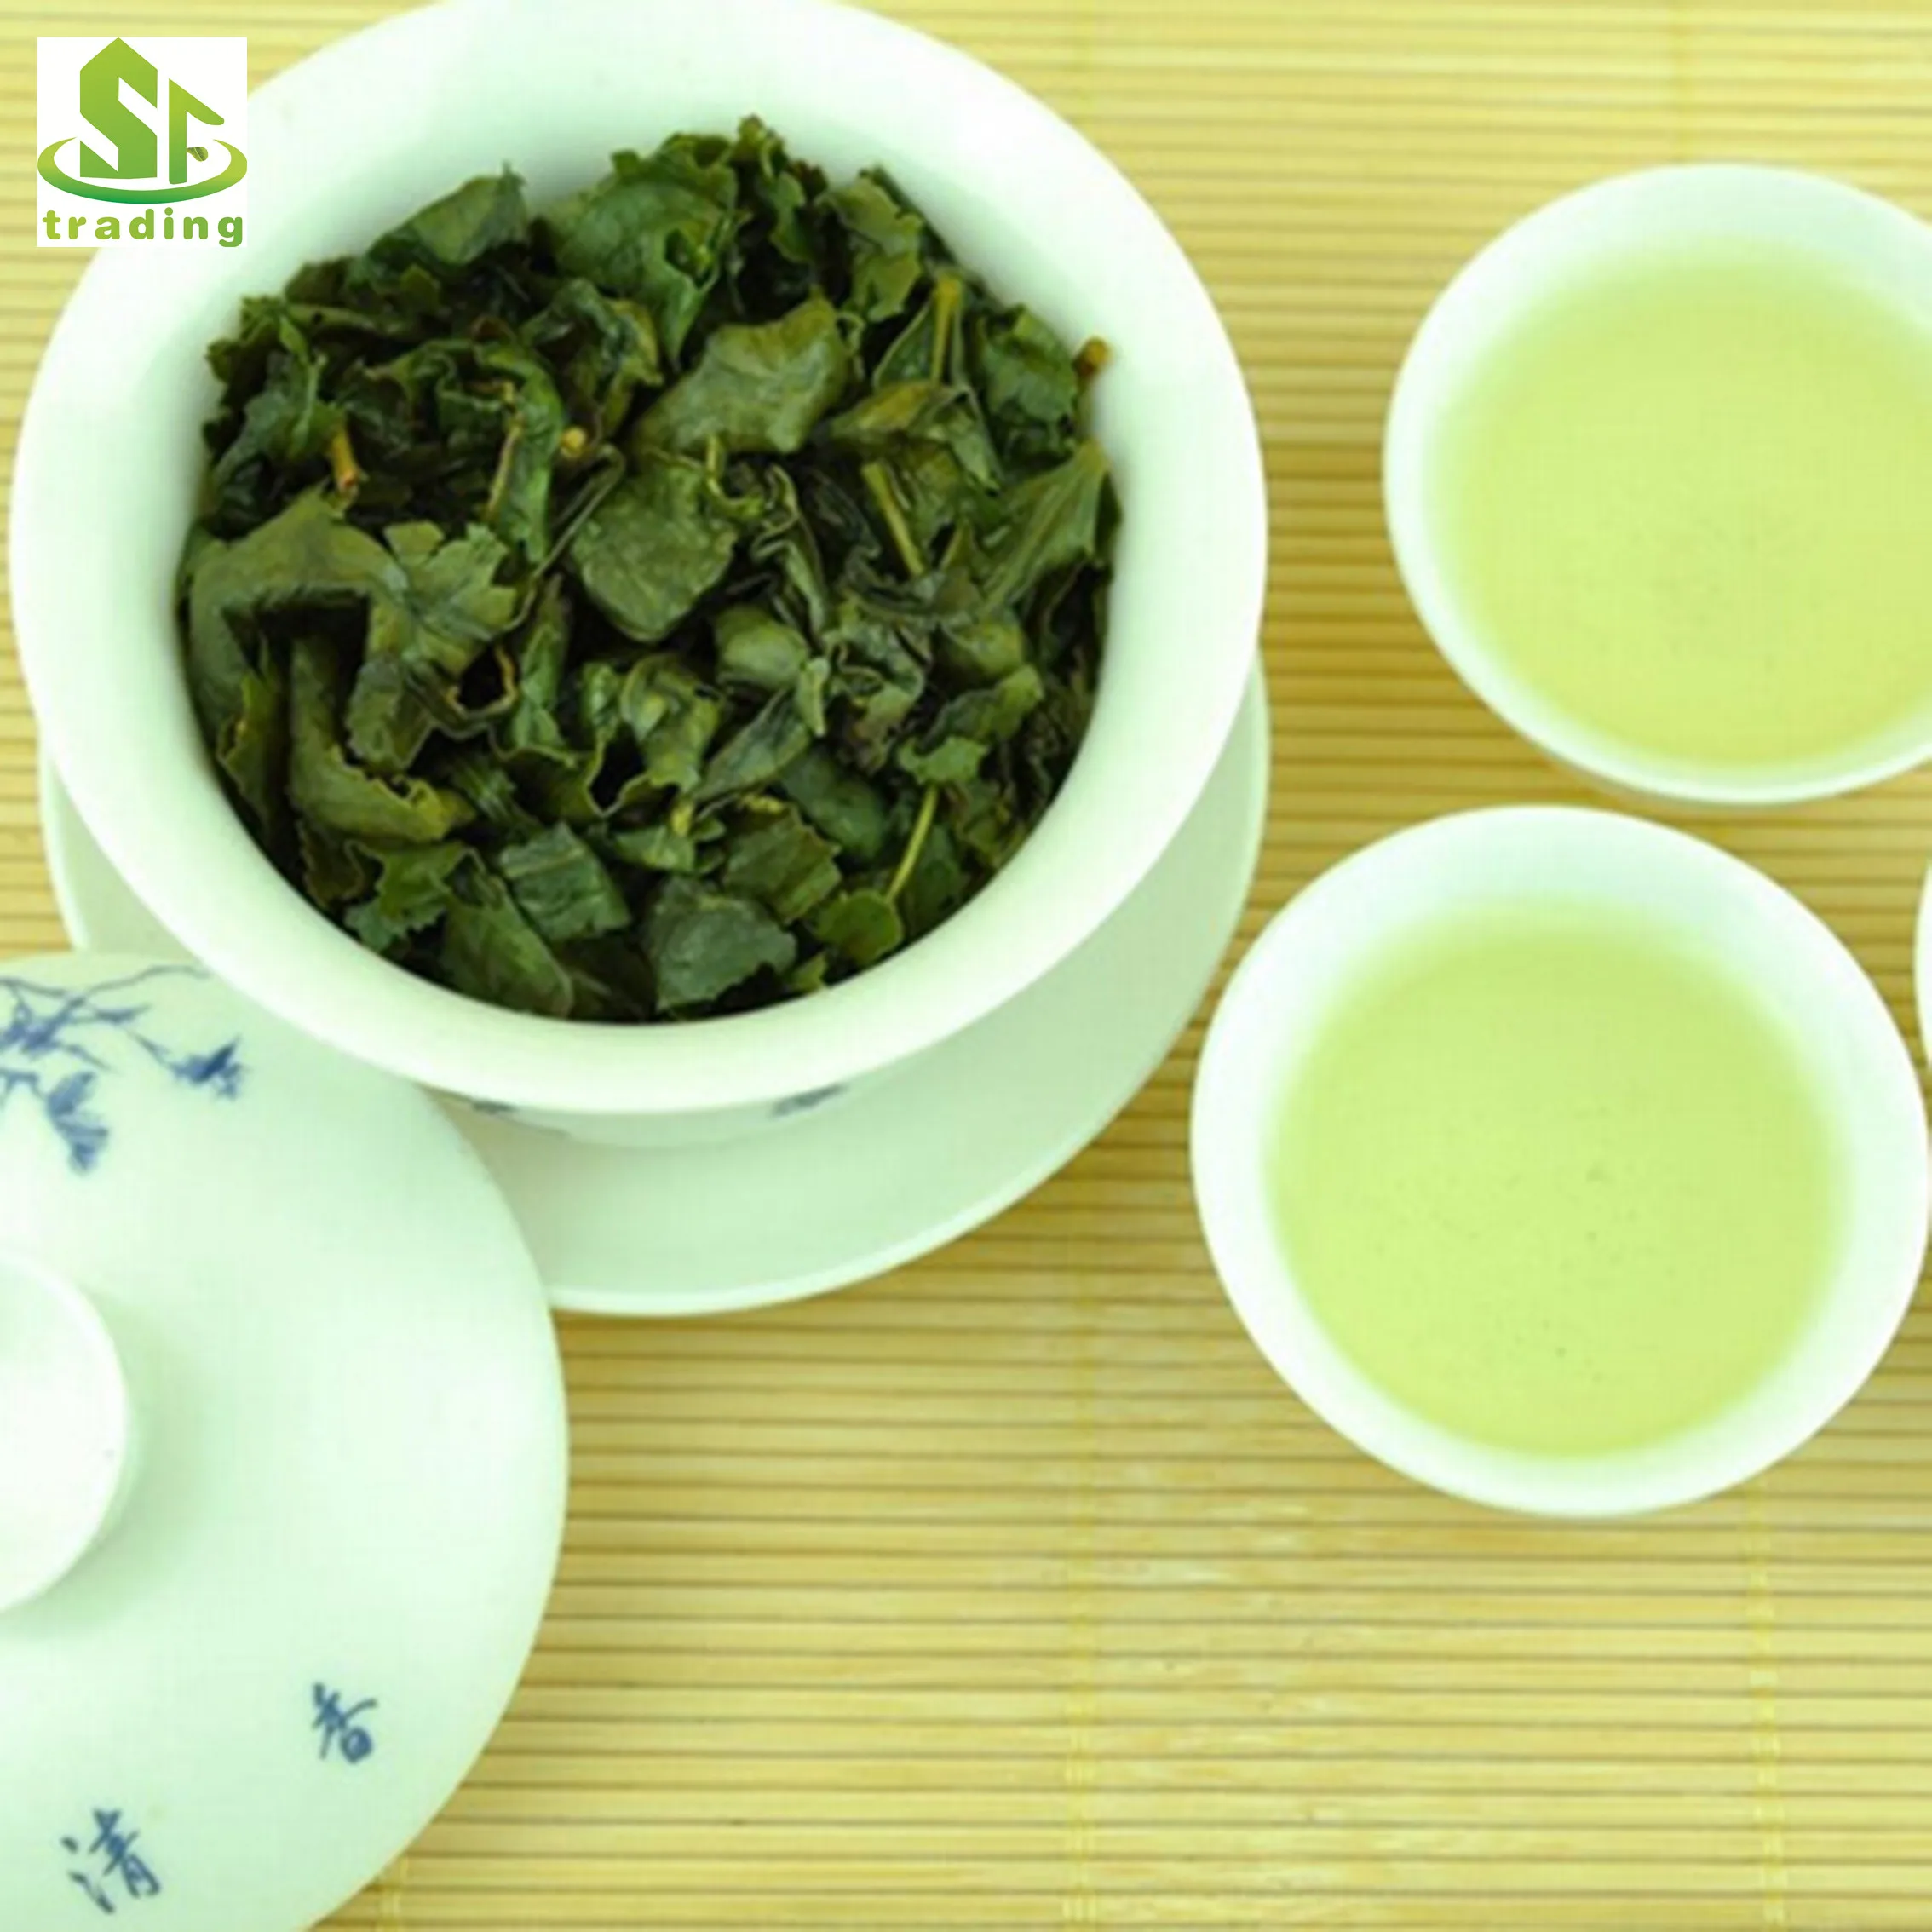 free sample fujian oolong tea tieguanyin tiekuanyin oolong tea